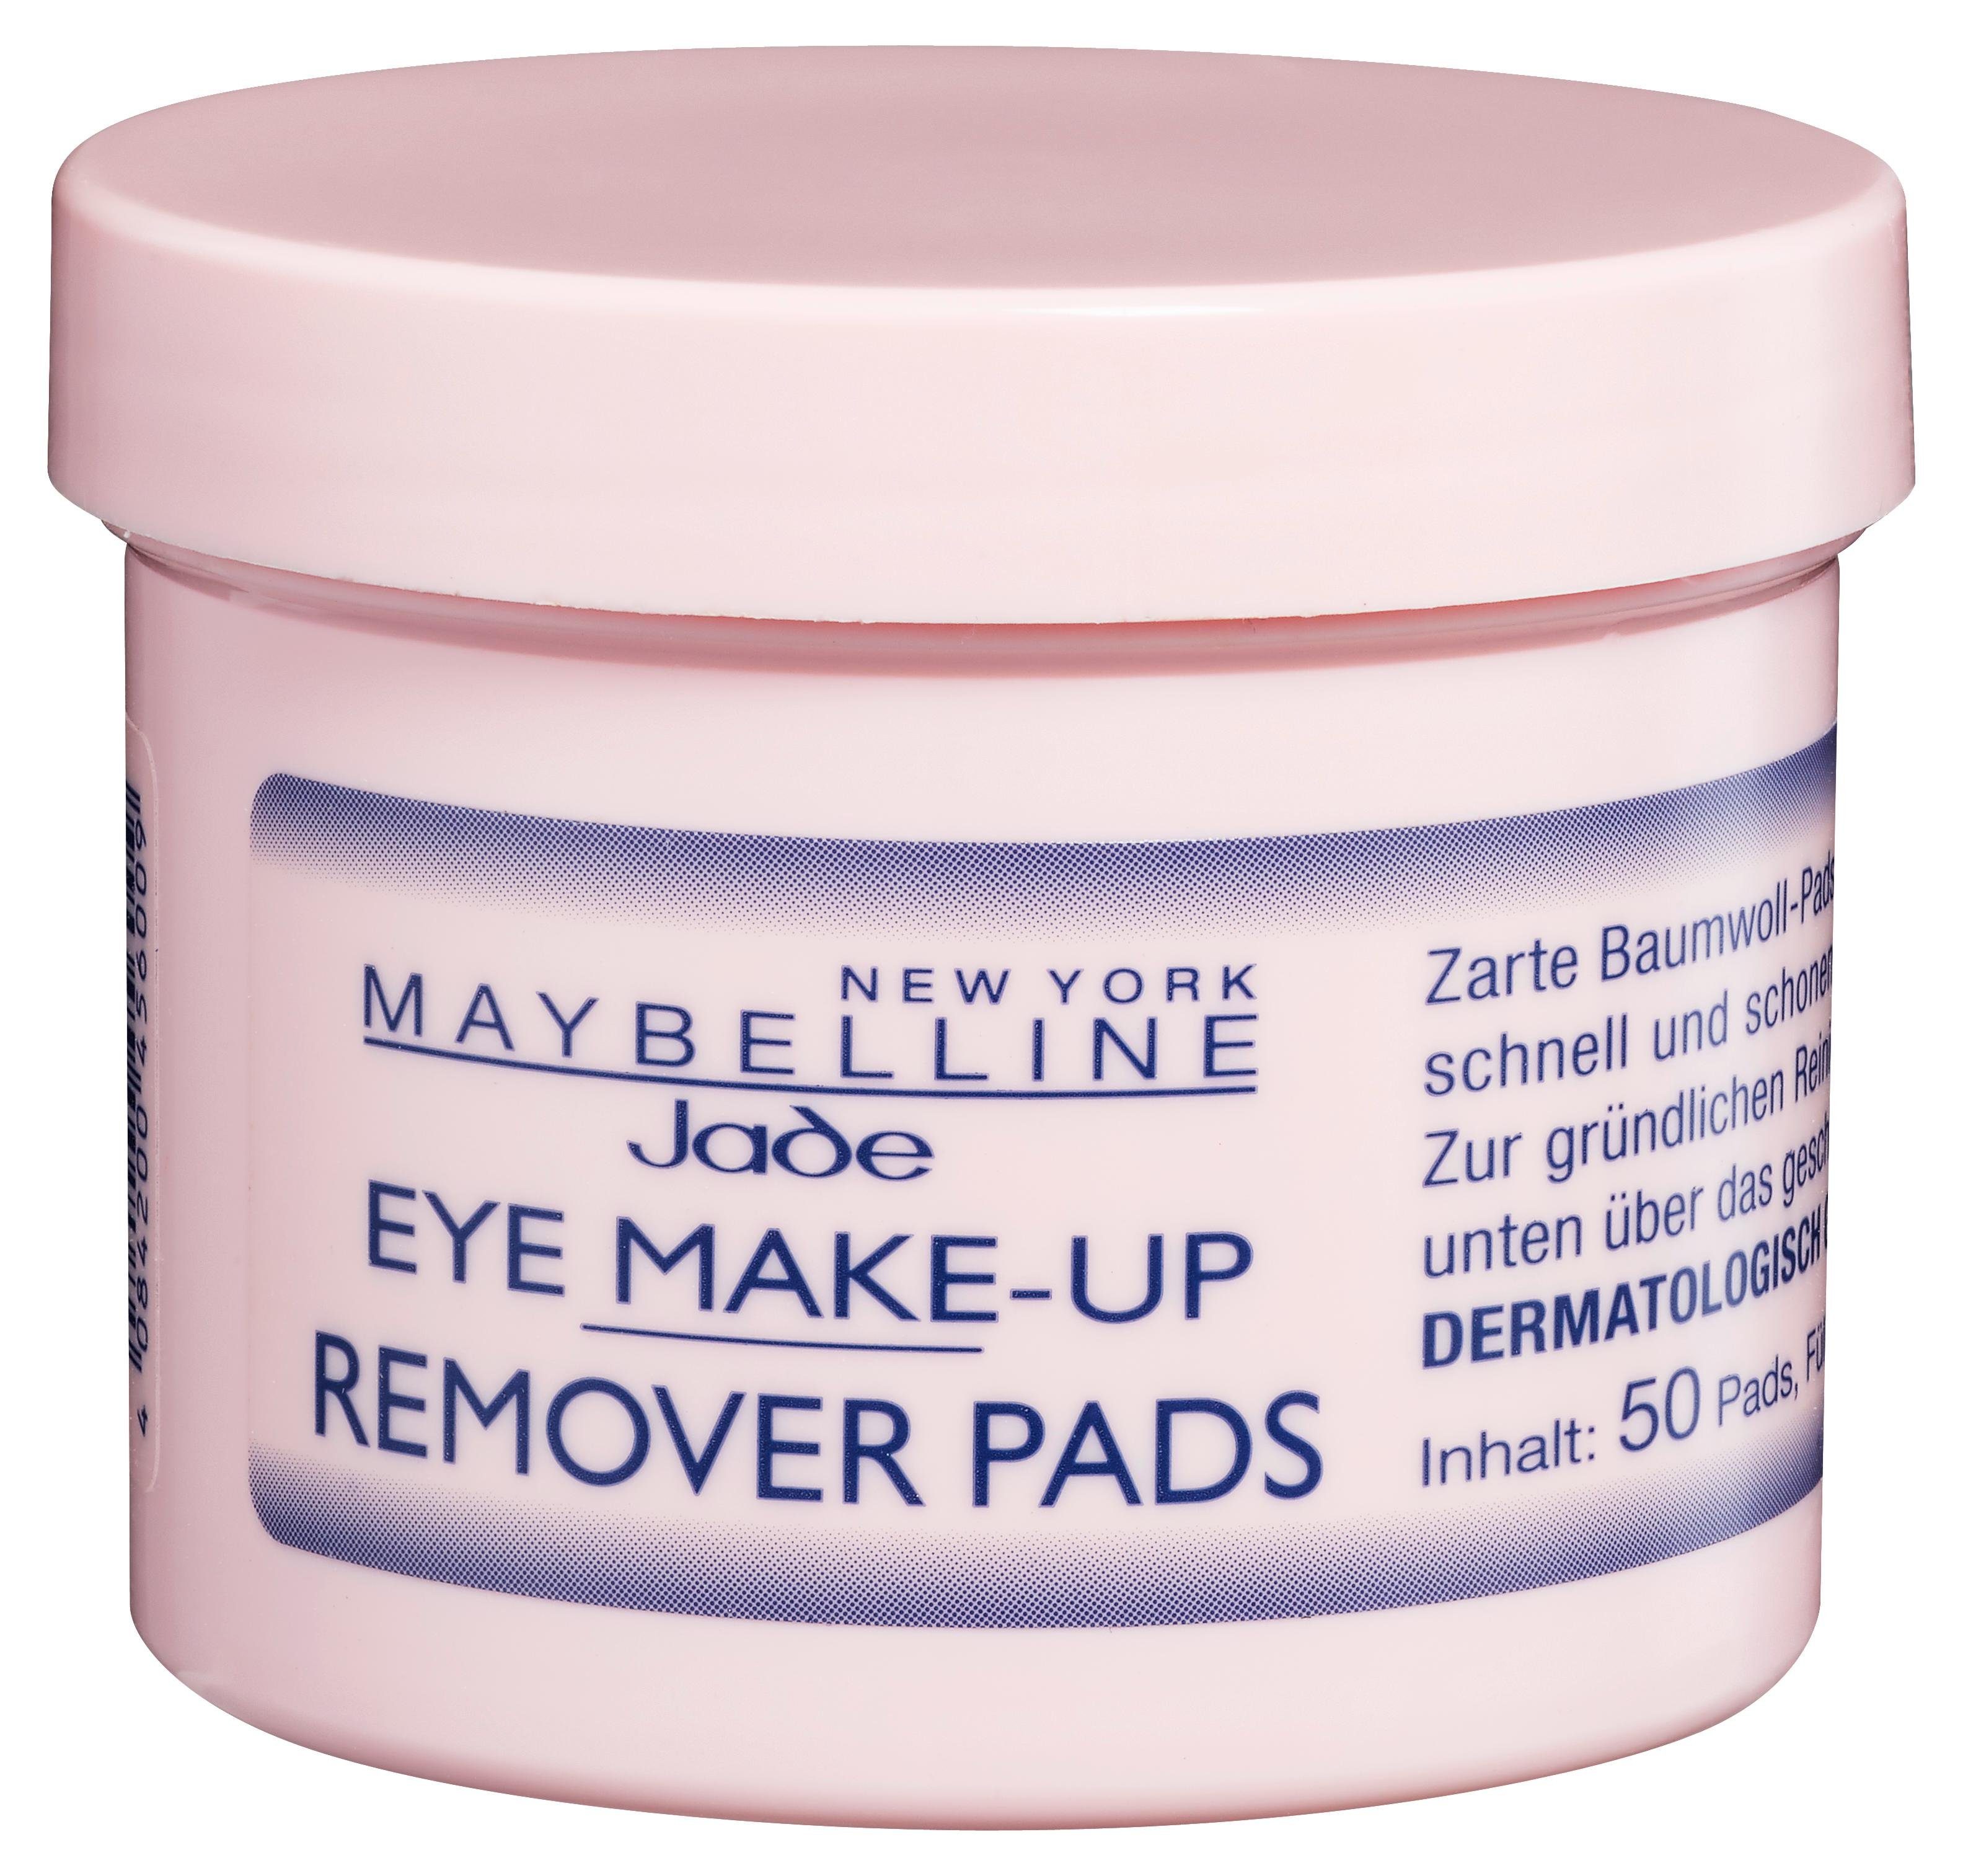 MAYBELLINE NEW YORK Augen-Make-up-Entferner Eye Remover Make-Up Pads